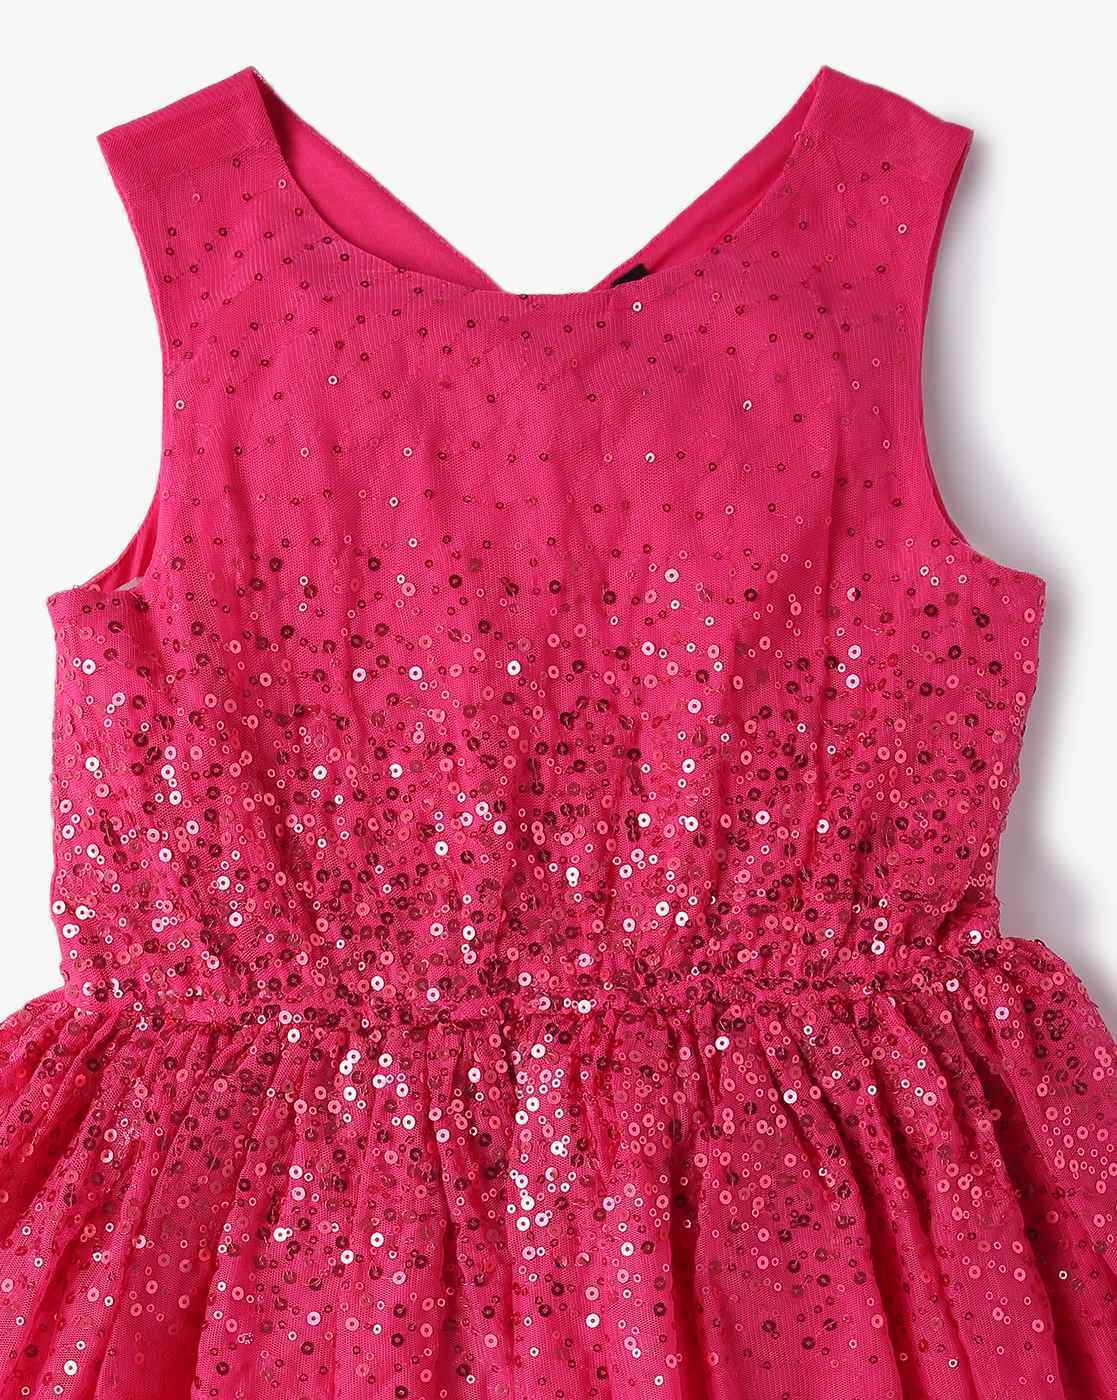 Sequin Dress - Buy Sequin Dress online in India